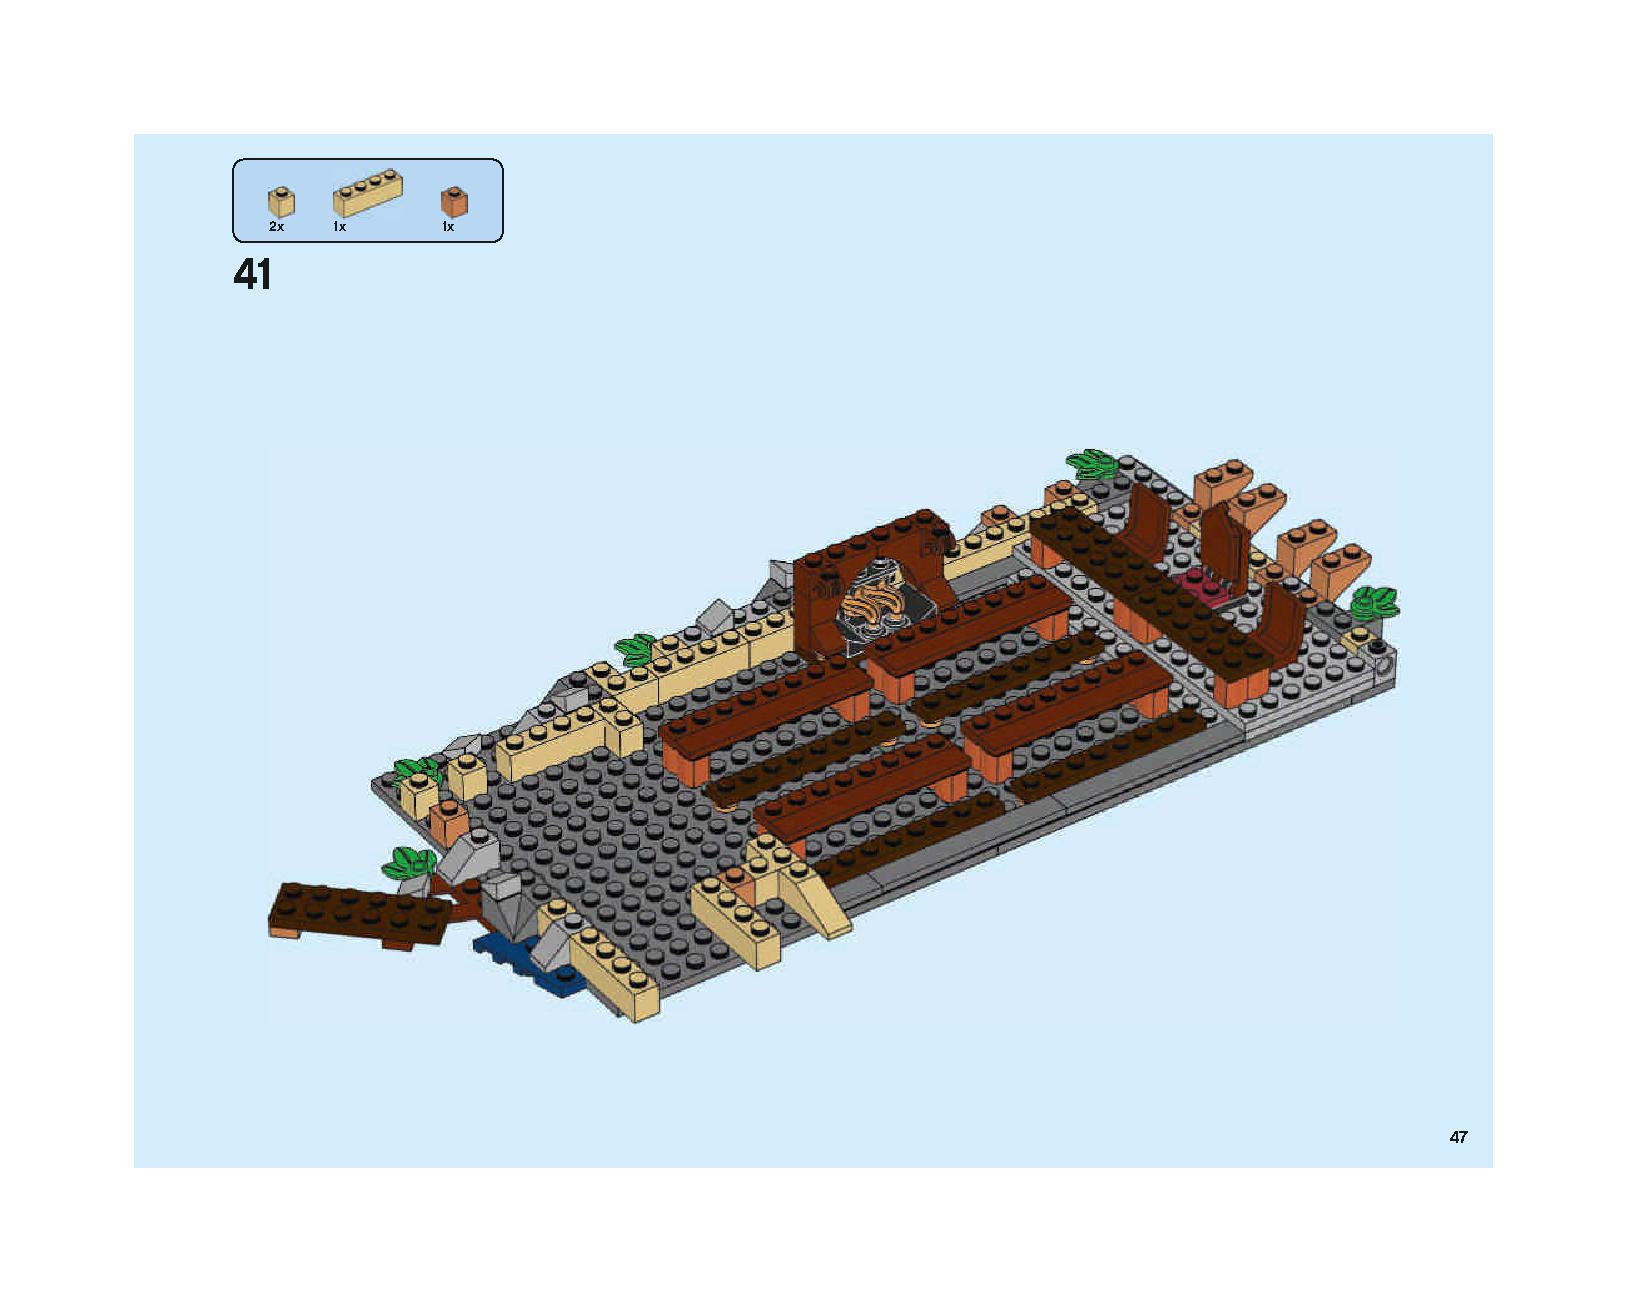 ホグワーツの大広間 75954 レゴの商品情報 レゴの説明書・組立方法 47 page